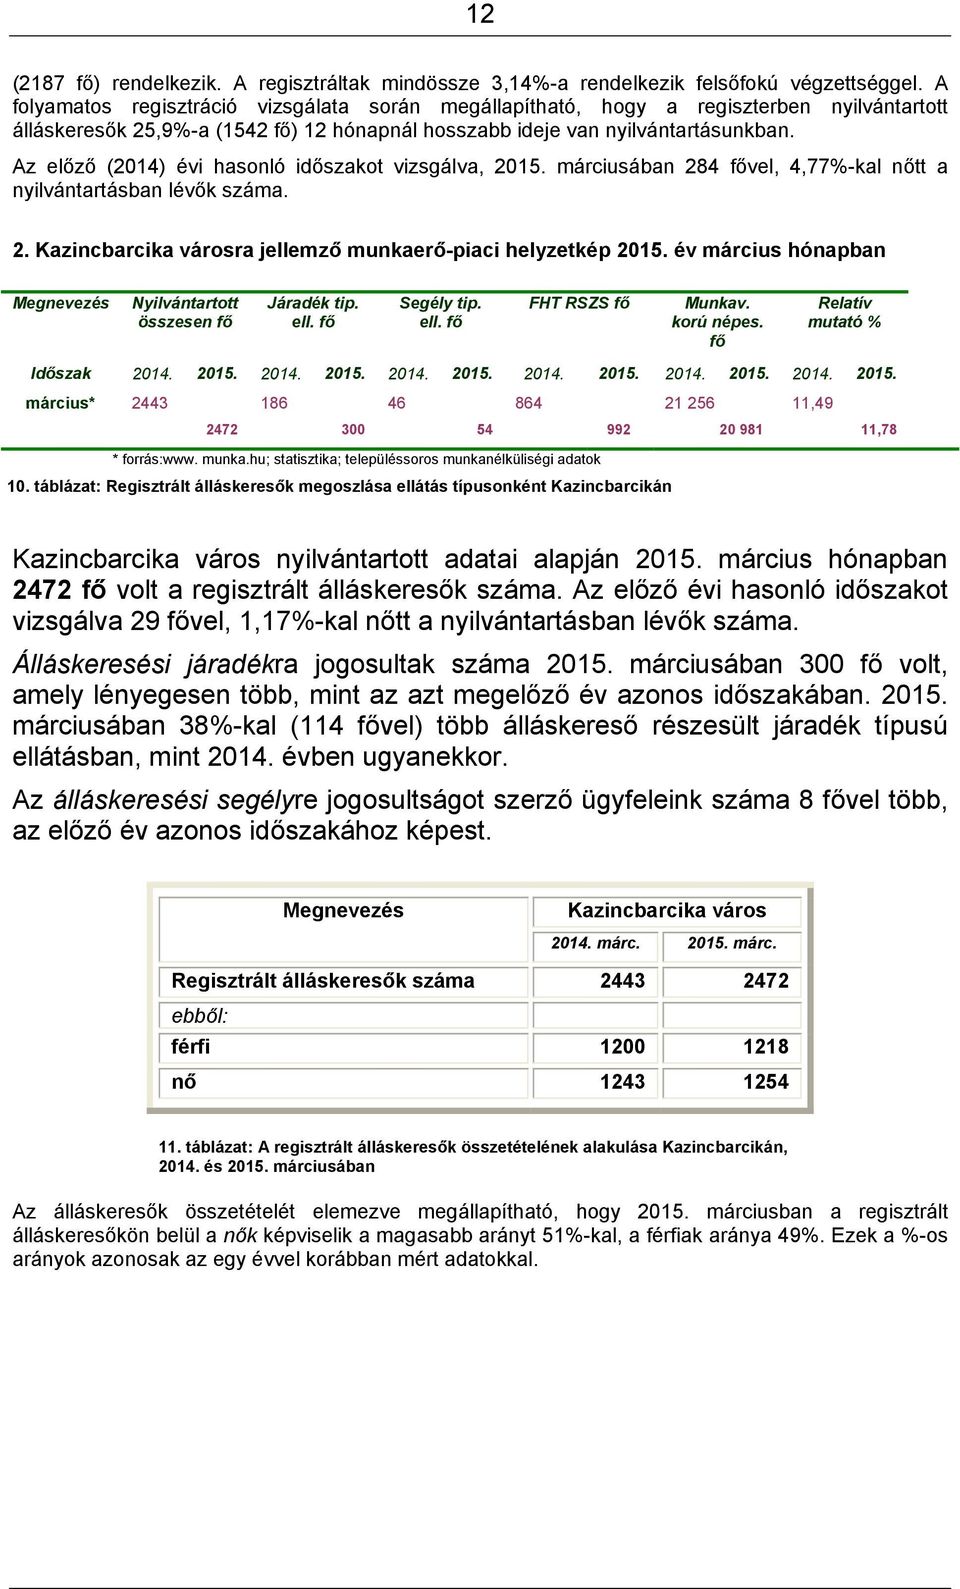 Az előző (2014) évi hasonló időszakot vizsgálva, 2015. márciusában 284 fővel, 4,77%-kal nőtt a nyilvántartásban lévők száma. 2. Kazincbarcika városra jellemző munkaerő-piaci helyzetkép 2015.